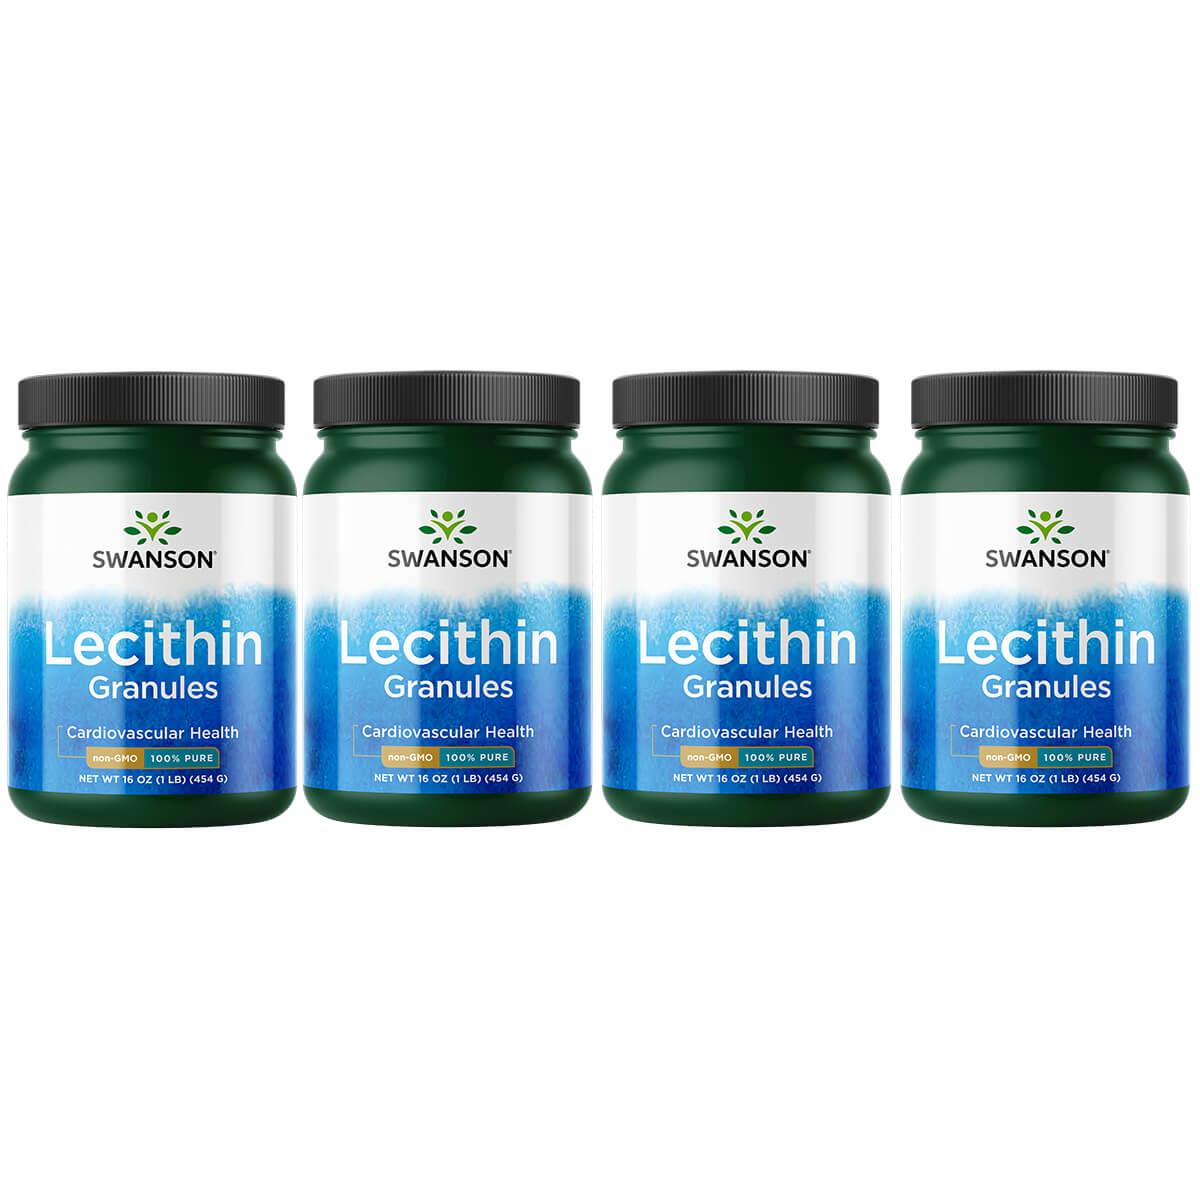 Swanson Premium Lecithin Granules - Non-Gmo 100% Pure 4 Pack Supplement Vitamin 16 oz Granules